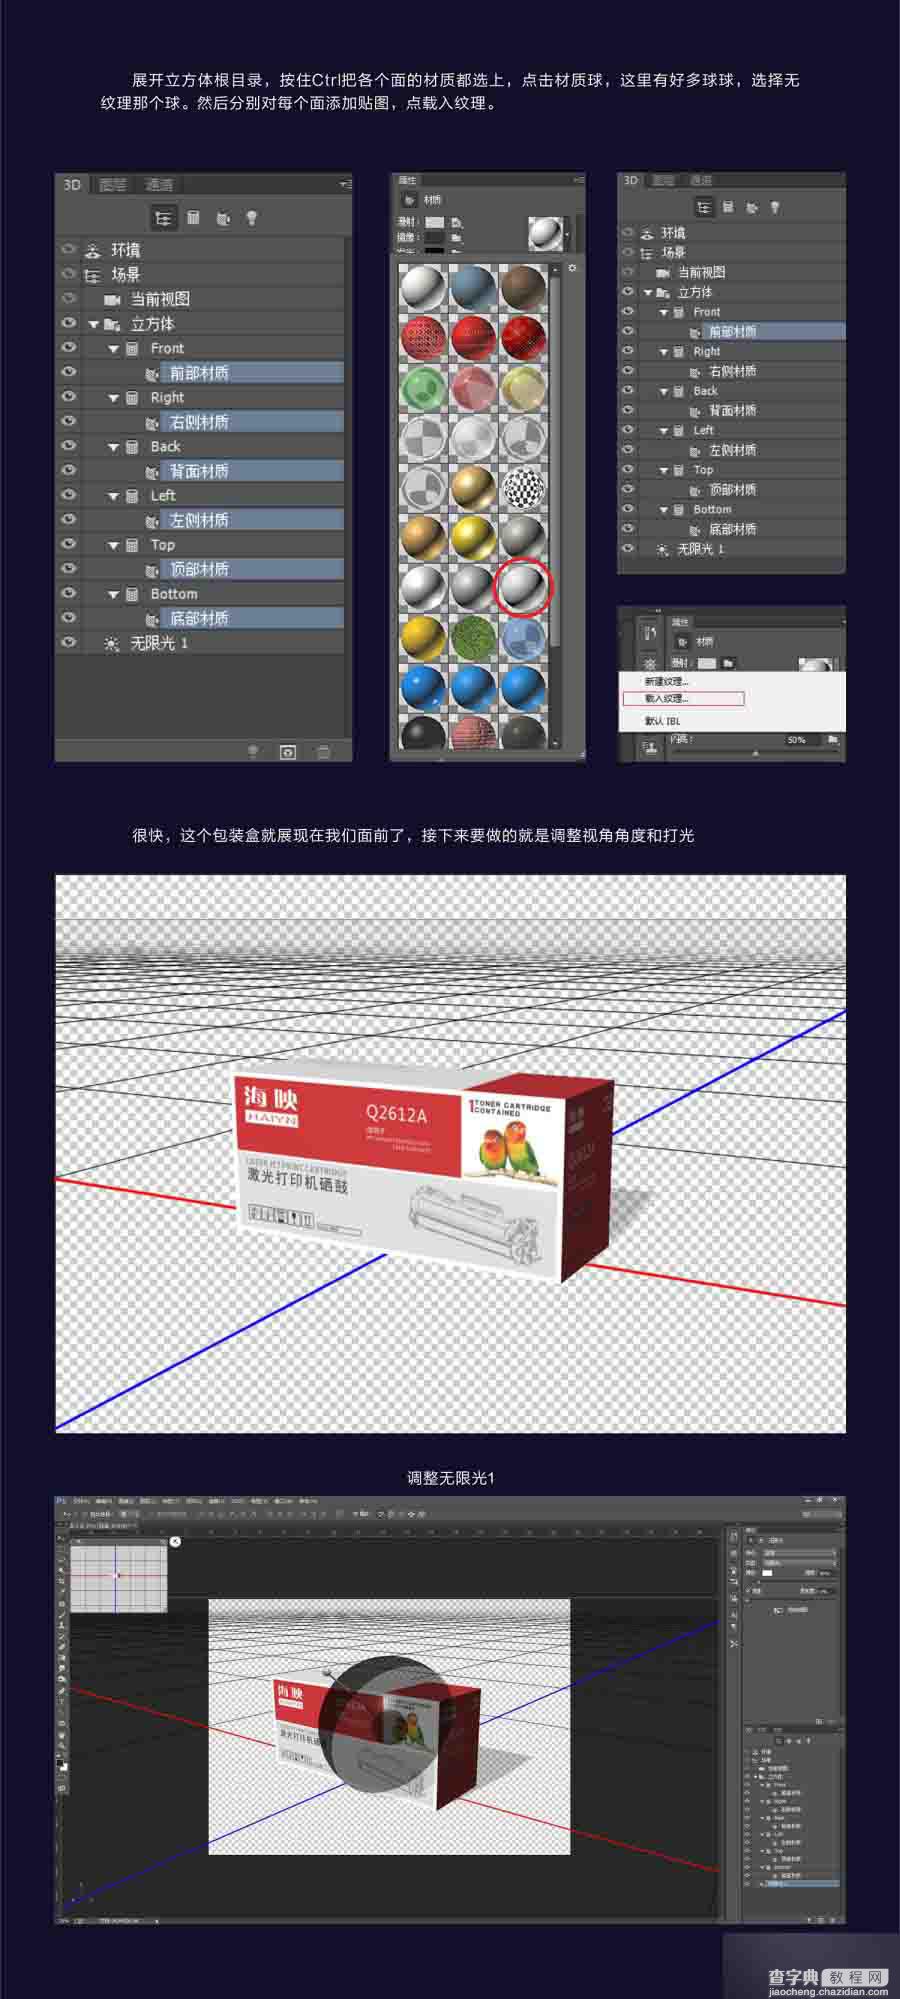 PhotoShop CC的3D功能制作一款产品包装盒立体效果7